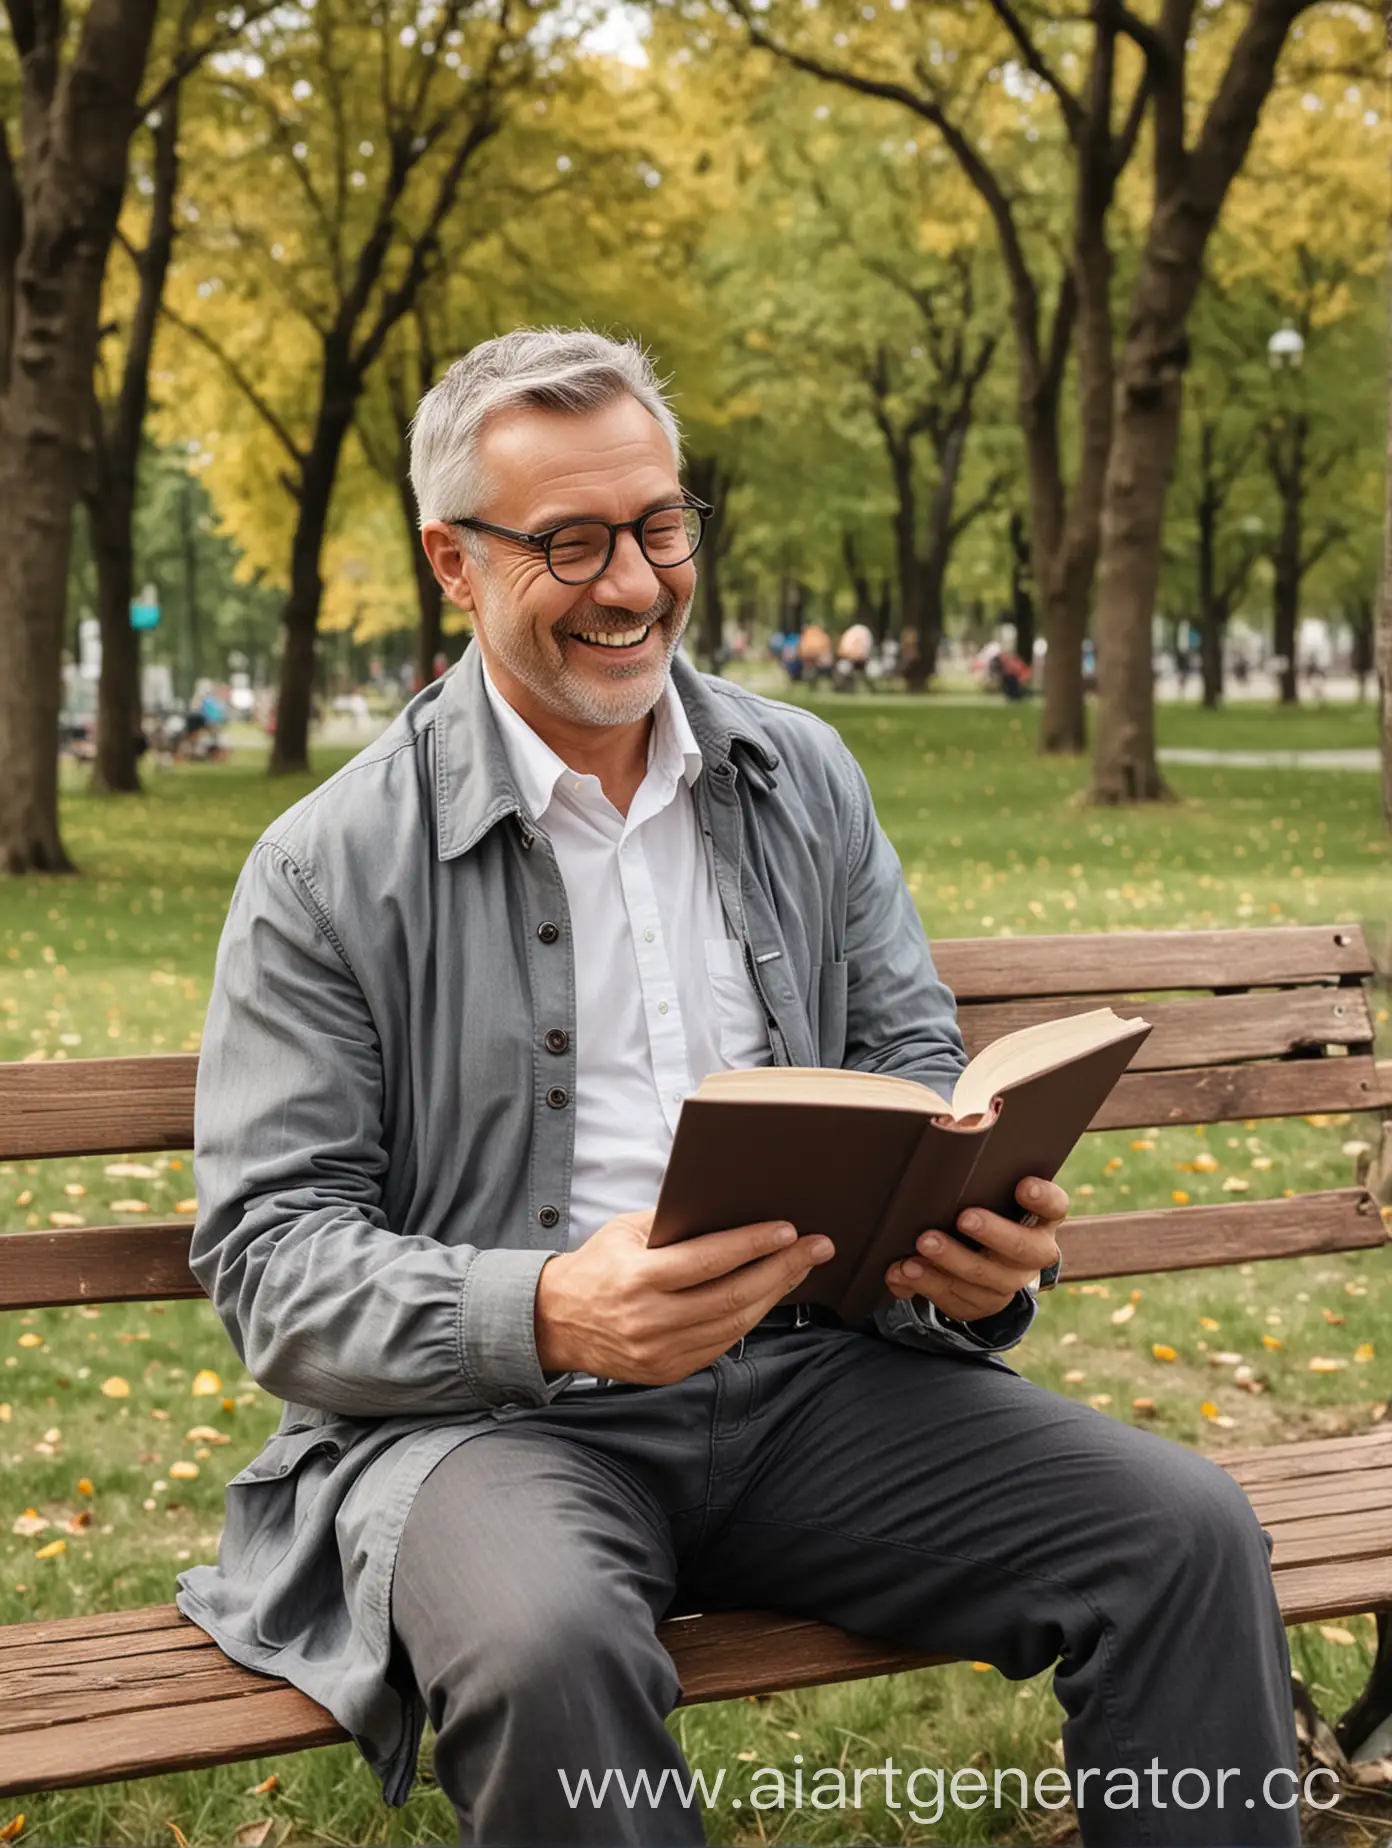 Веселый мужчина в возрасте читает книгу в парке